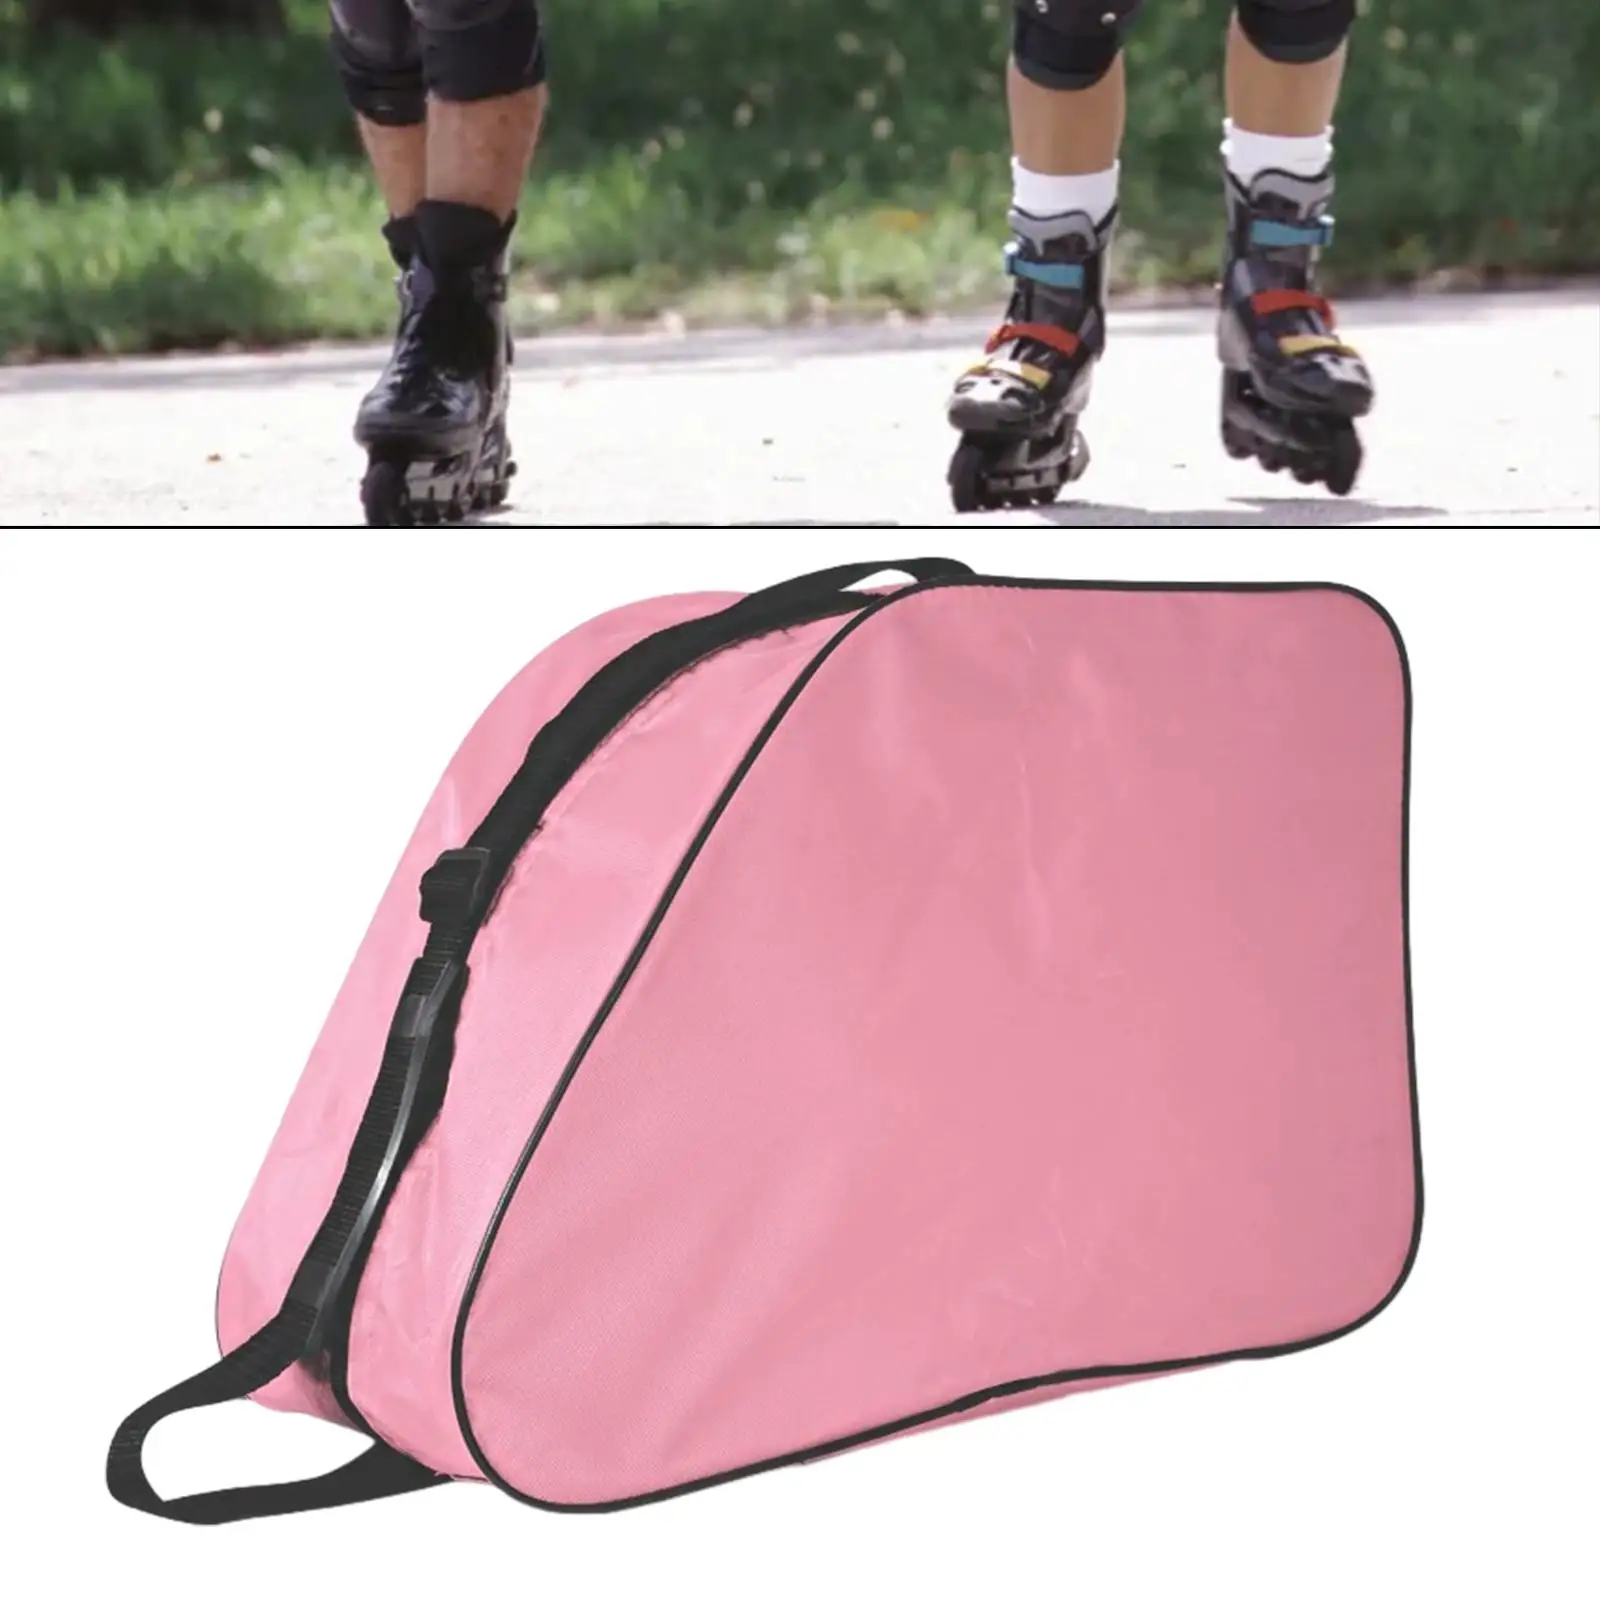 Large Capacity Roller Skate Bag Skating Shoes Handbag Ice Skating Bag Shoulder Bag for Quad Inline Figure Ice Hockey Skate